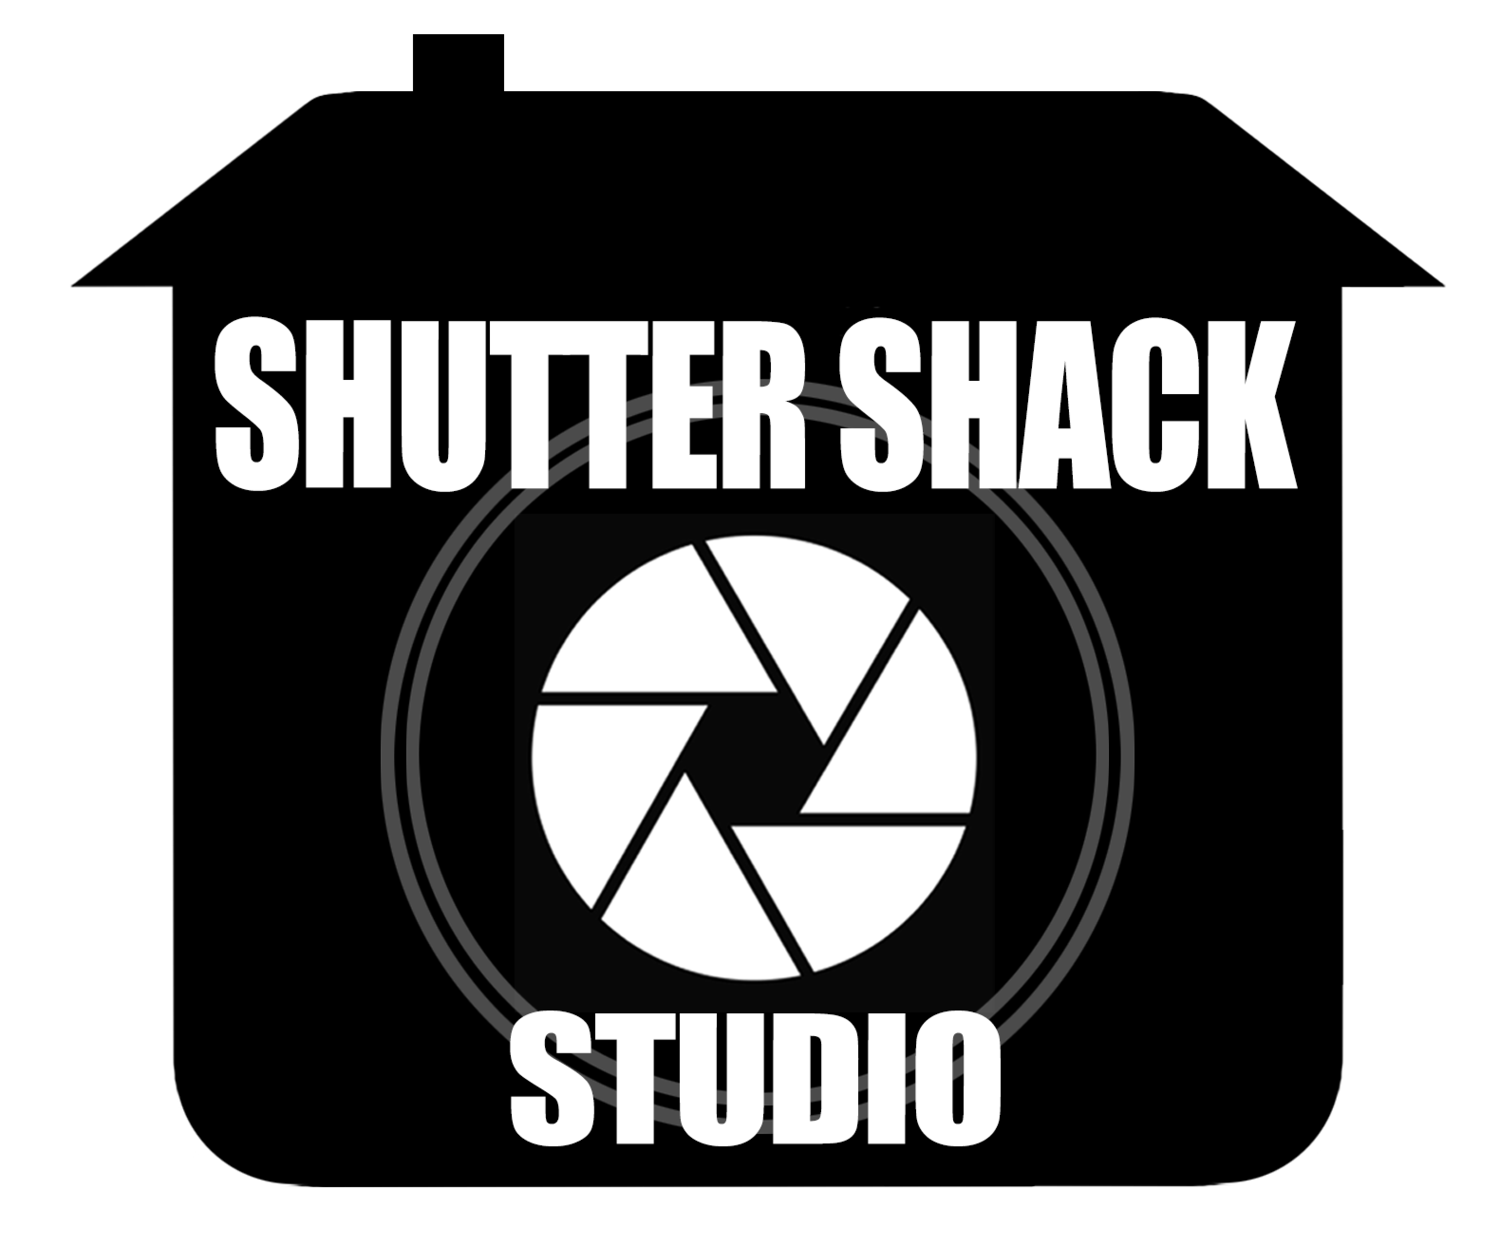 The Shutter Shack Studio